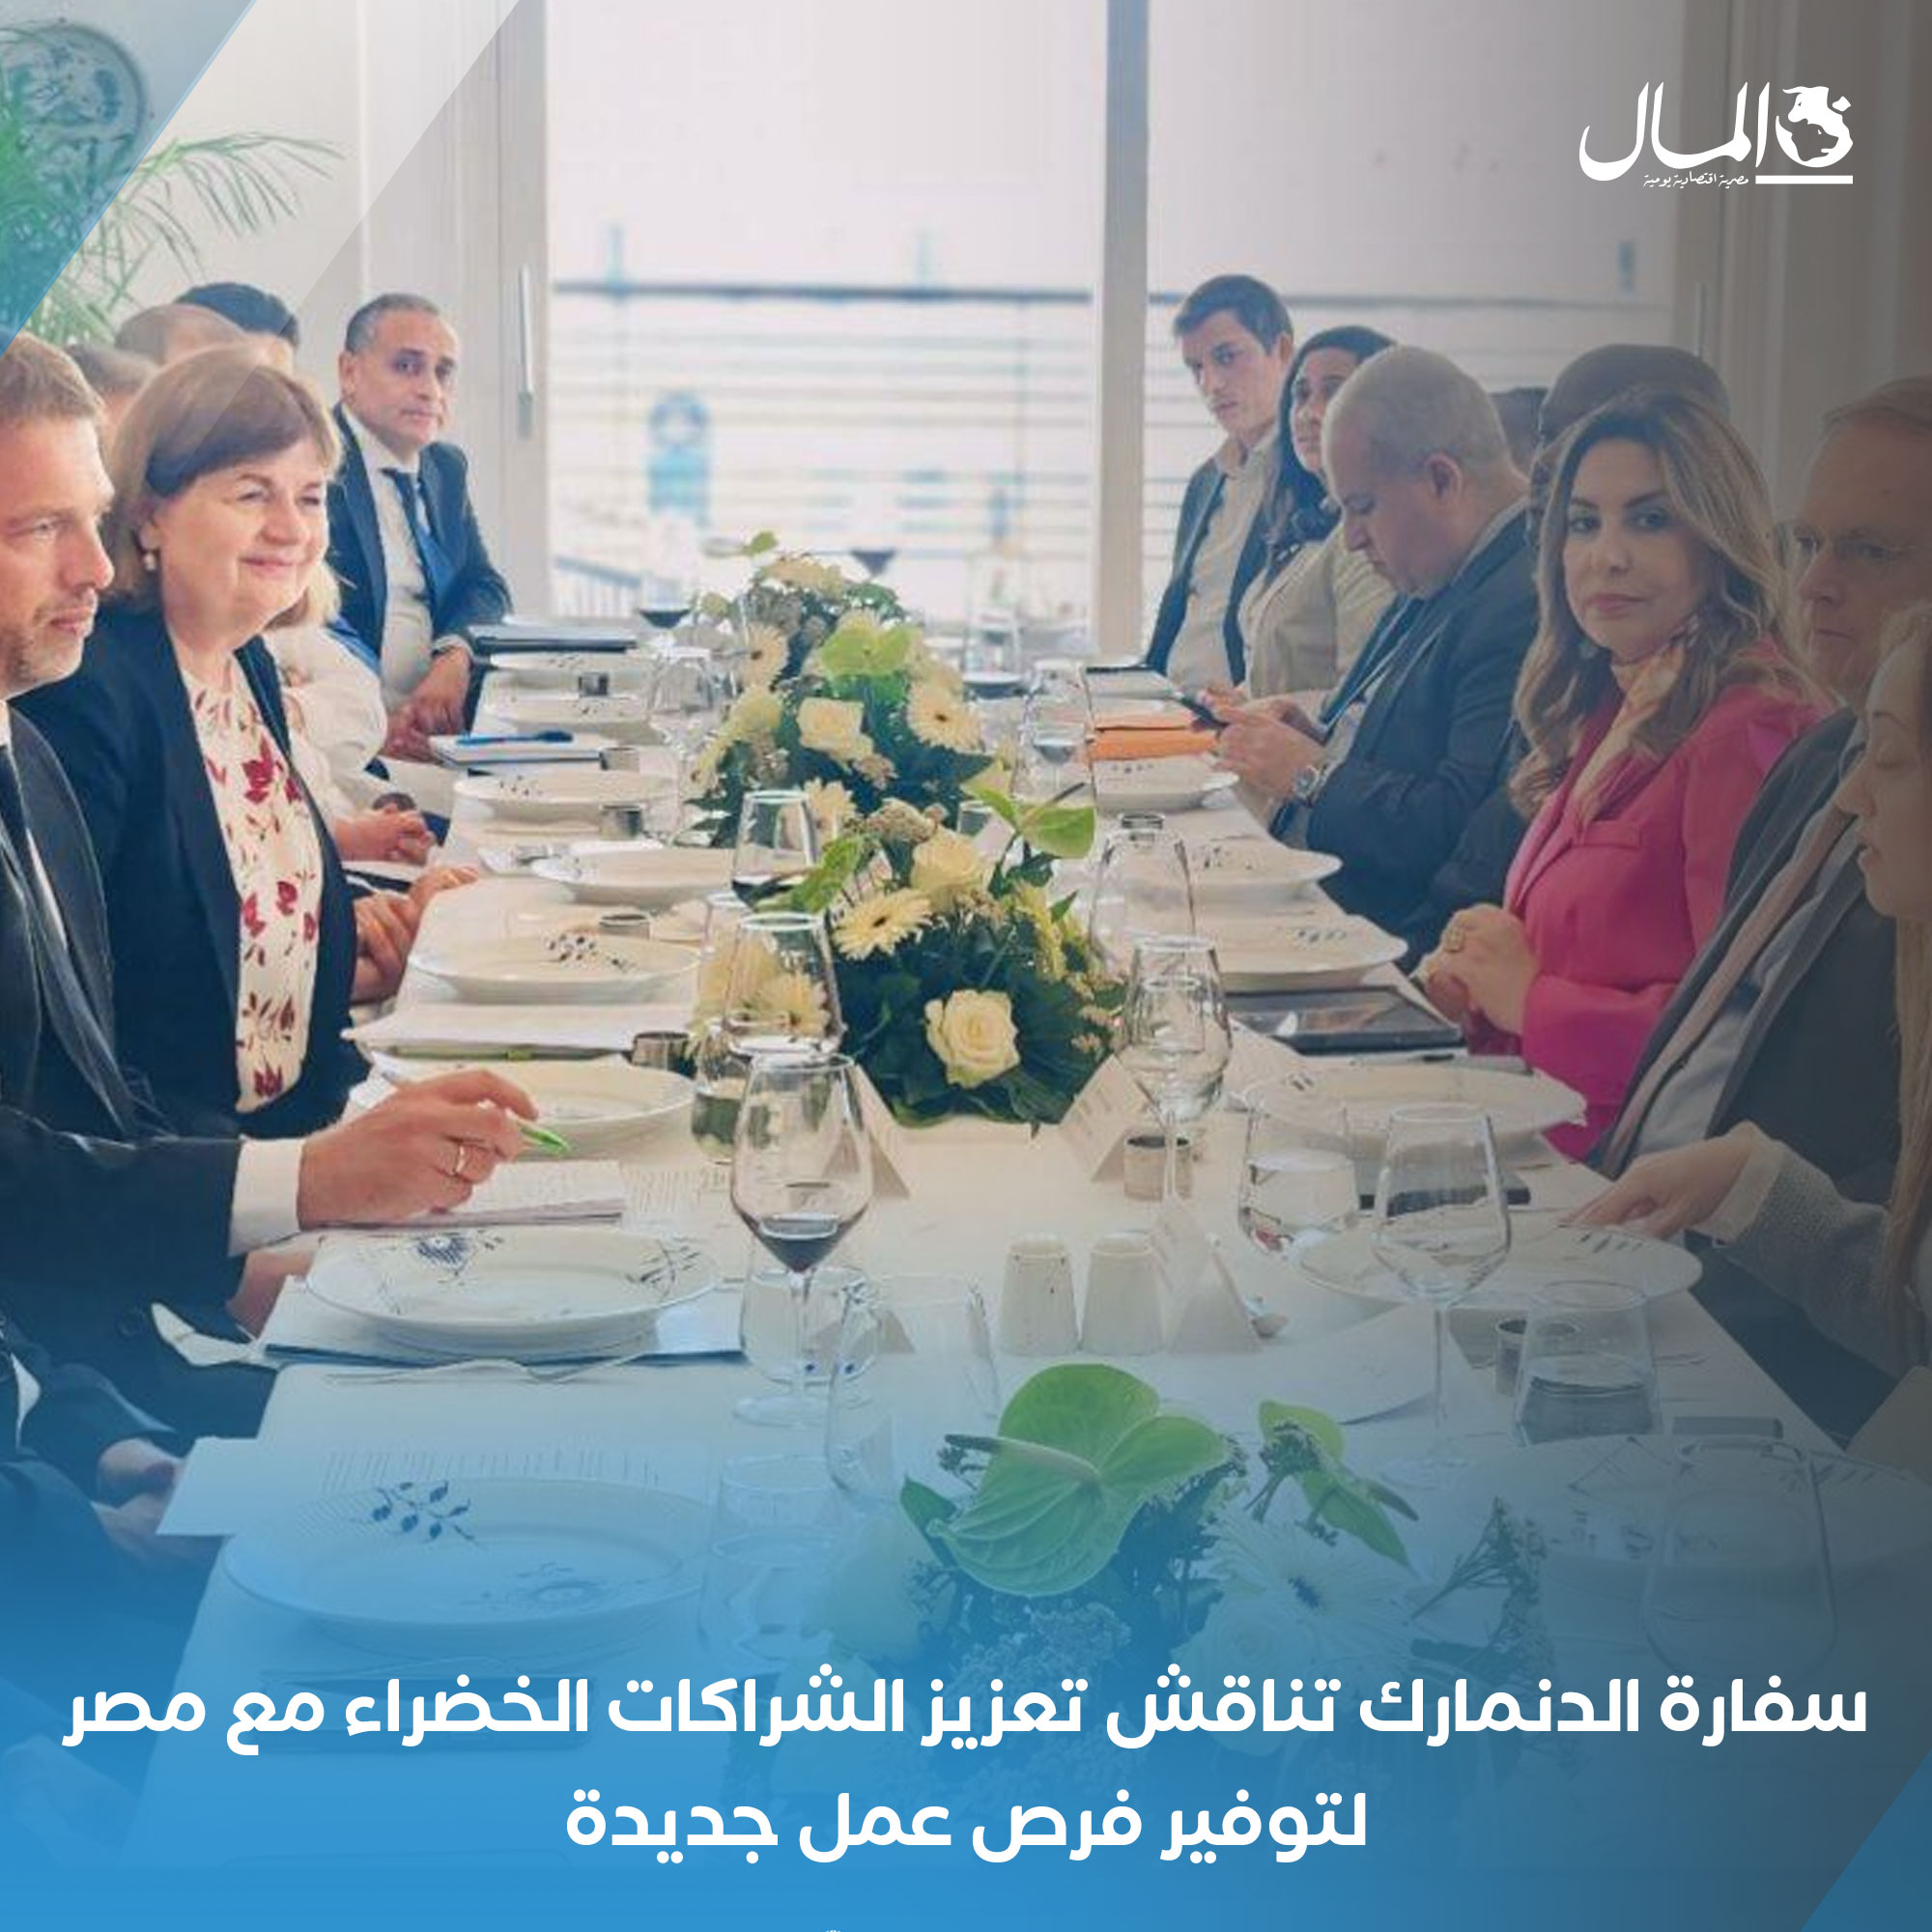 سفارة الدنمارك تناقش تعزيز الشراكات الخضراء مع مصر لتوفير فرص عمل جديدة. للتفاصيل 